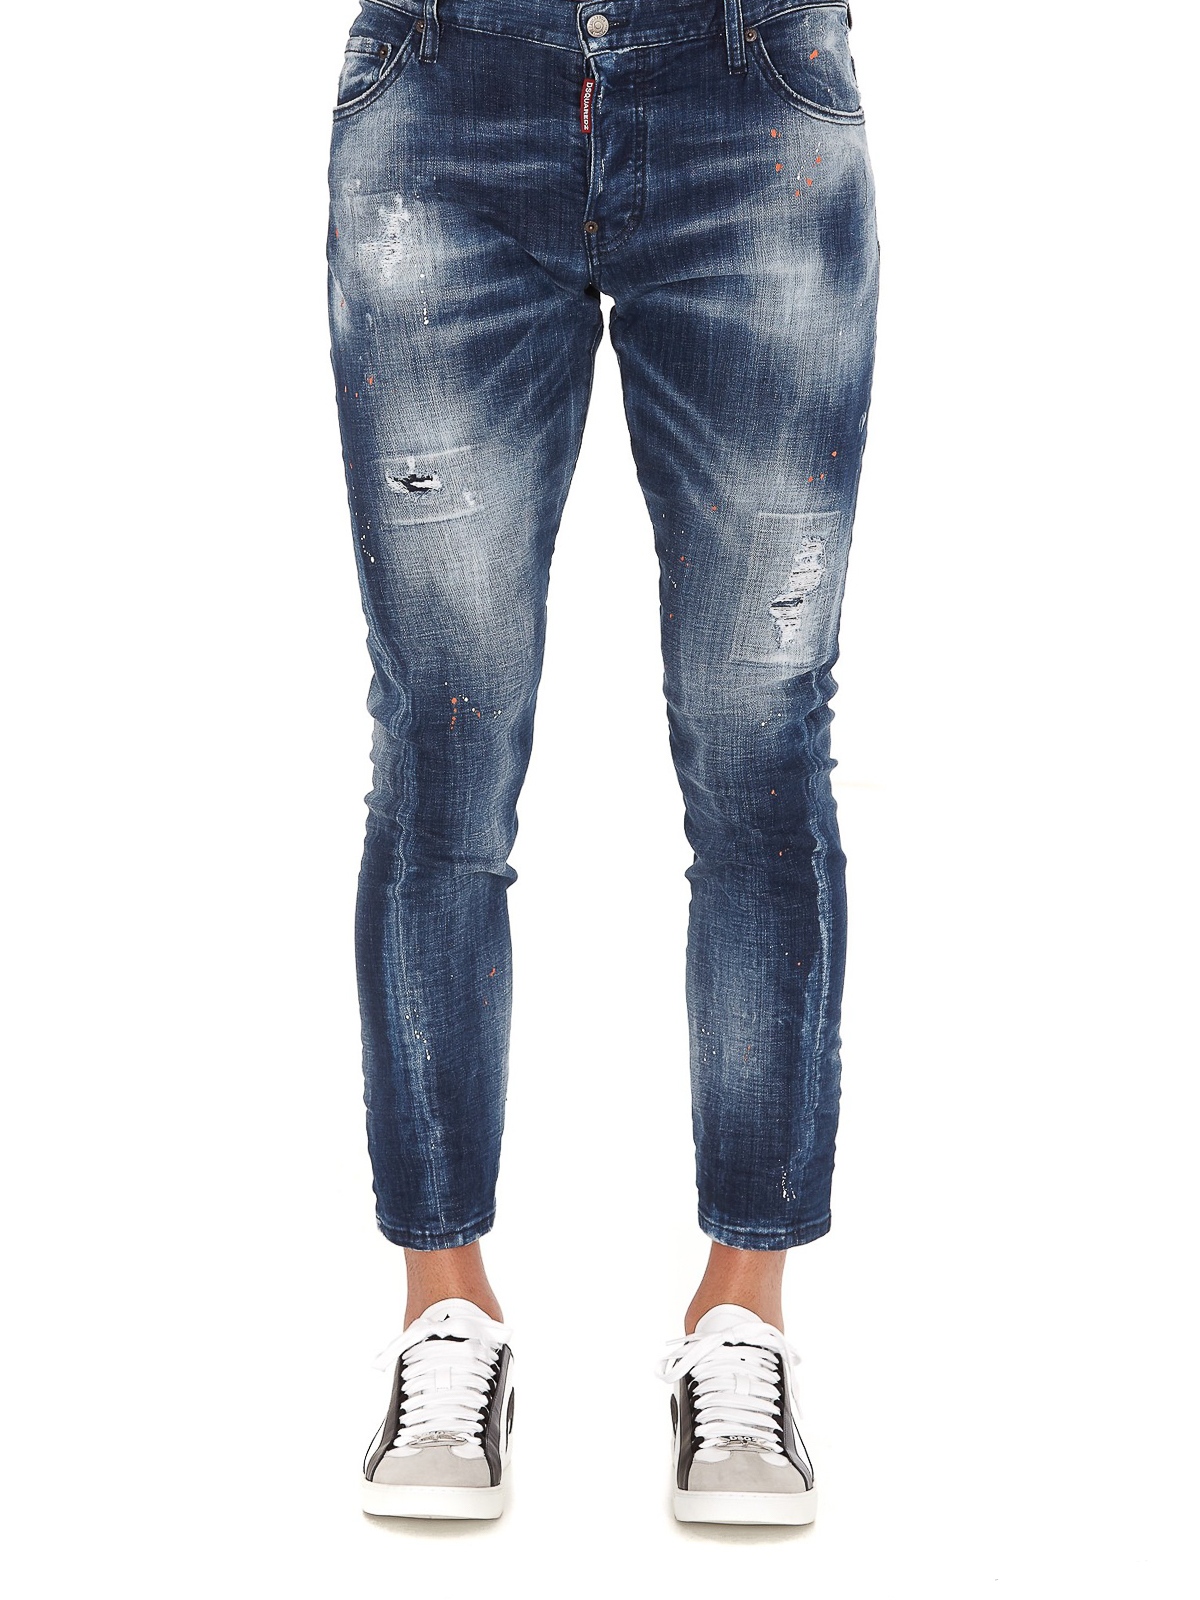 Skinny jeans Dsquared2 - Sexy Twist jeans - S74LB0822S30342470 | iKRIX.com